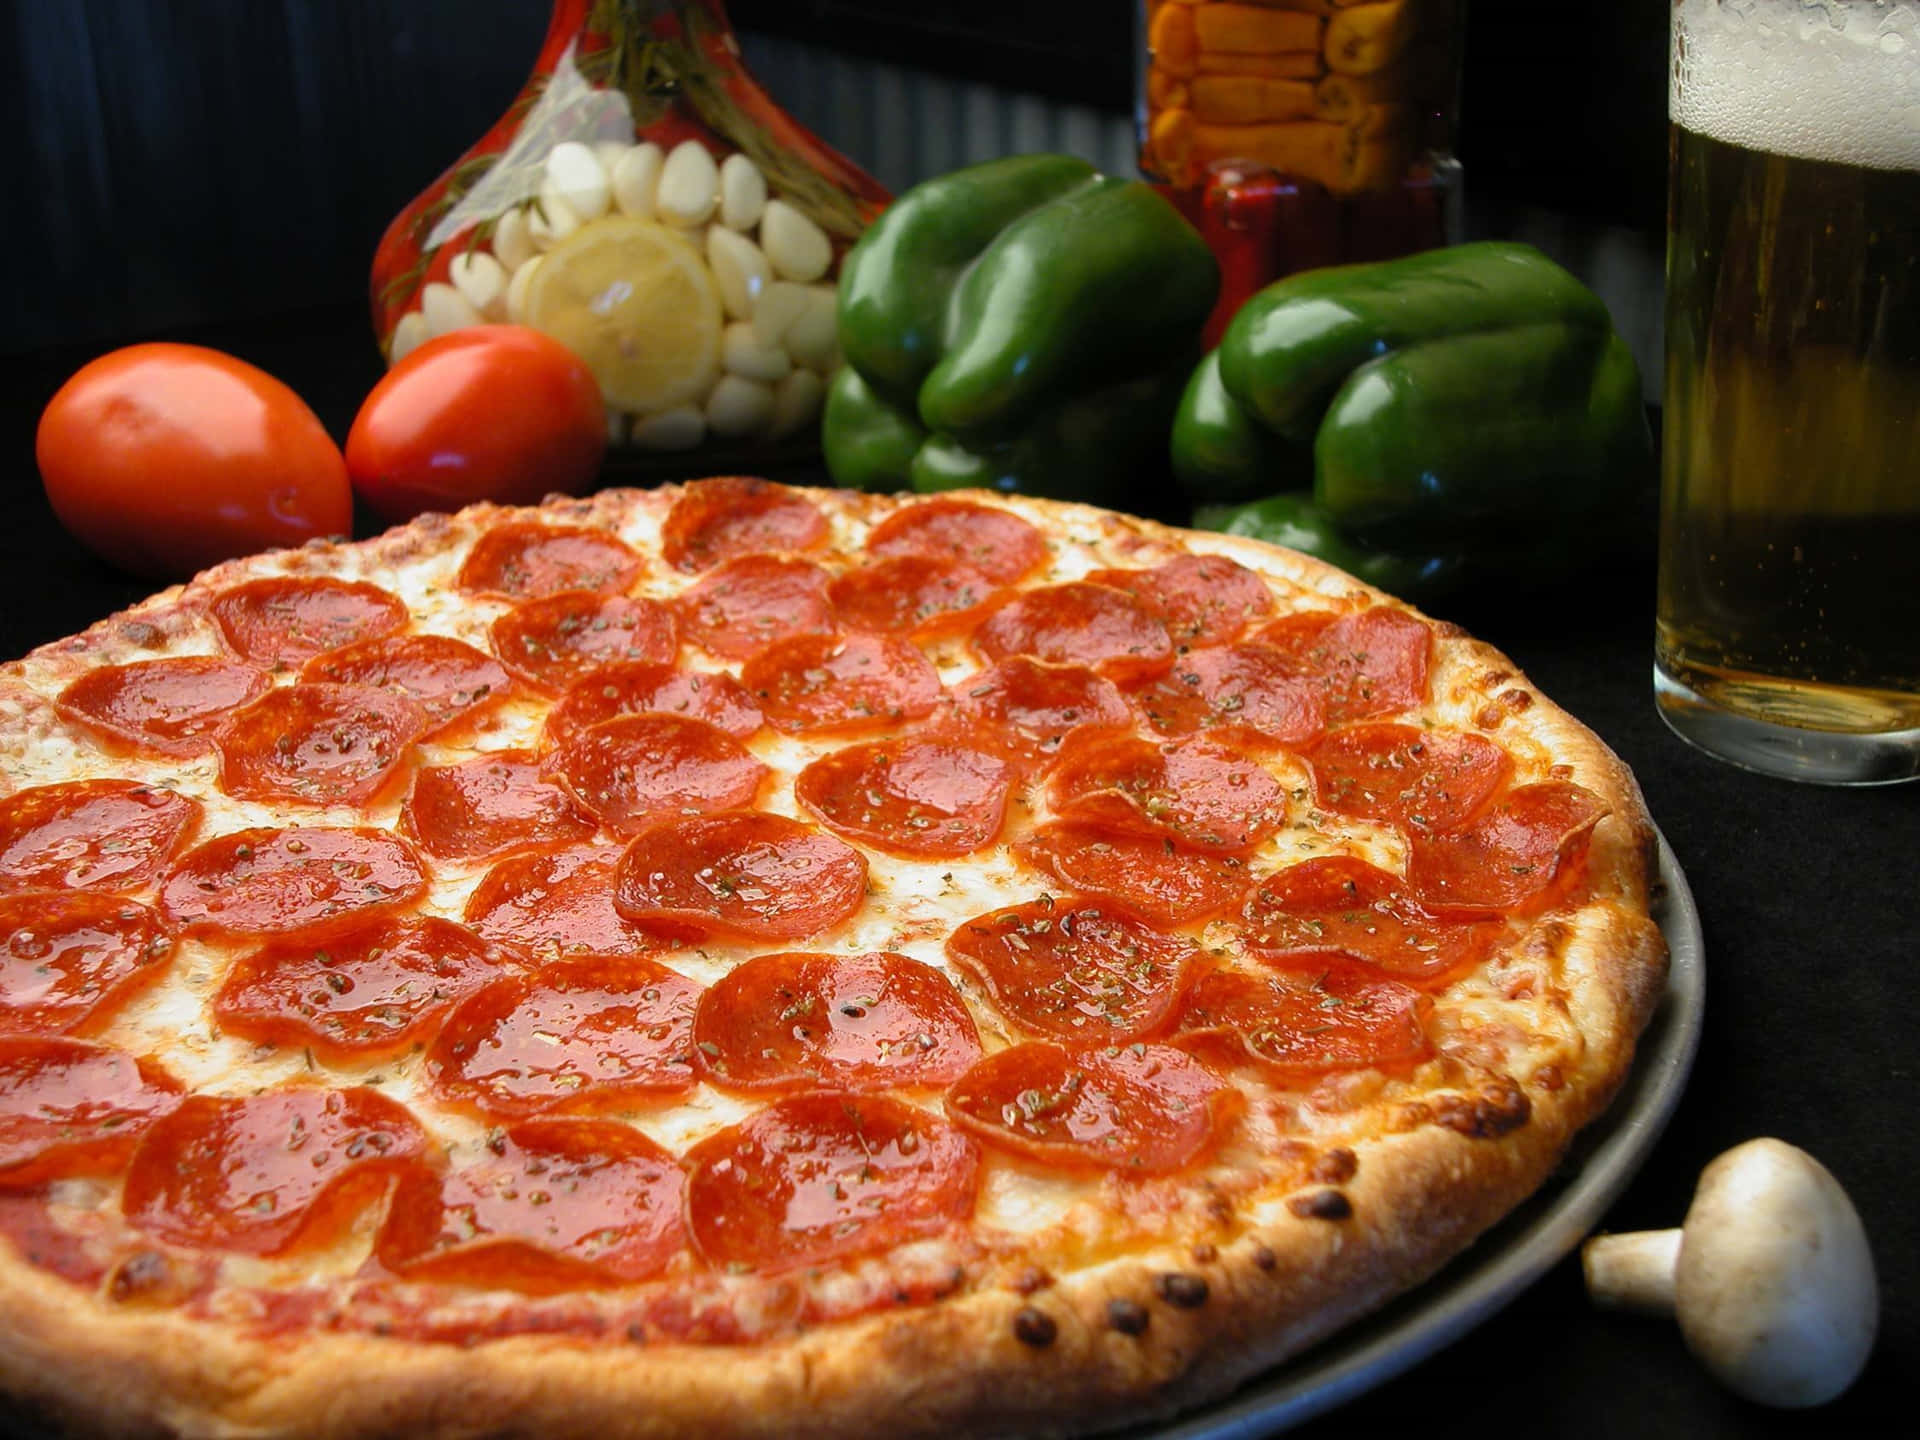 Soddisfazionegarantita - Pizza Calda E Succulenta Con Tutti Gli Ingredienti!